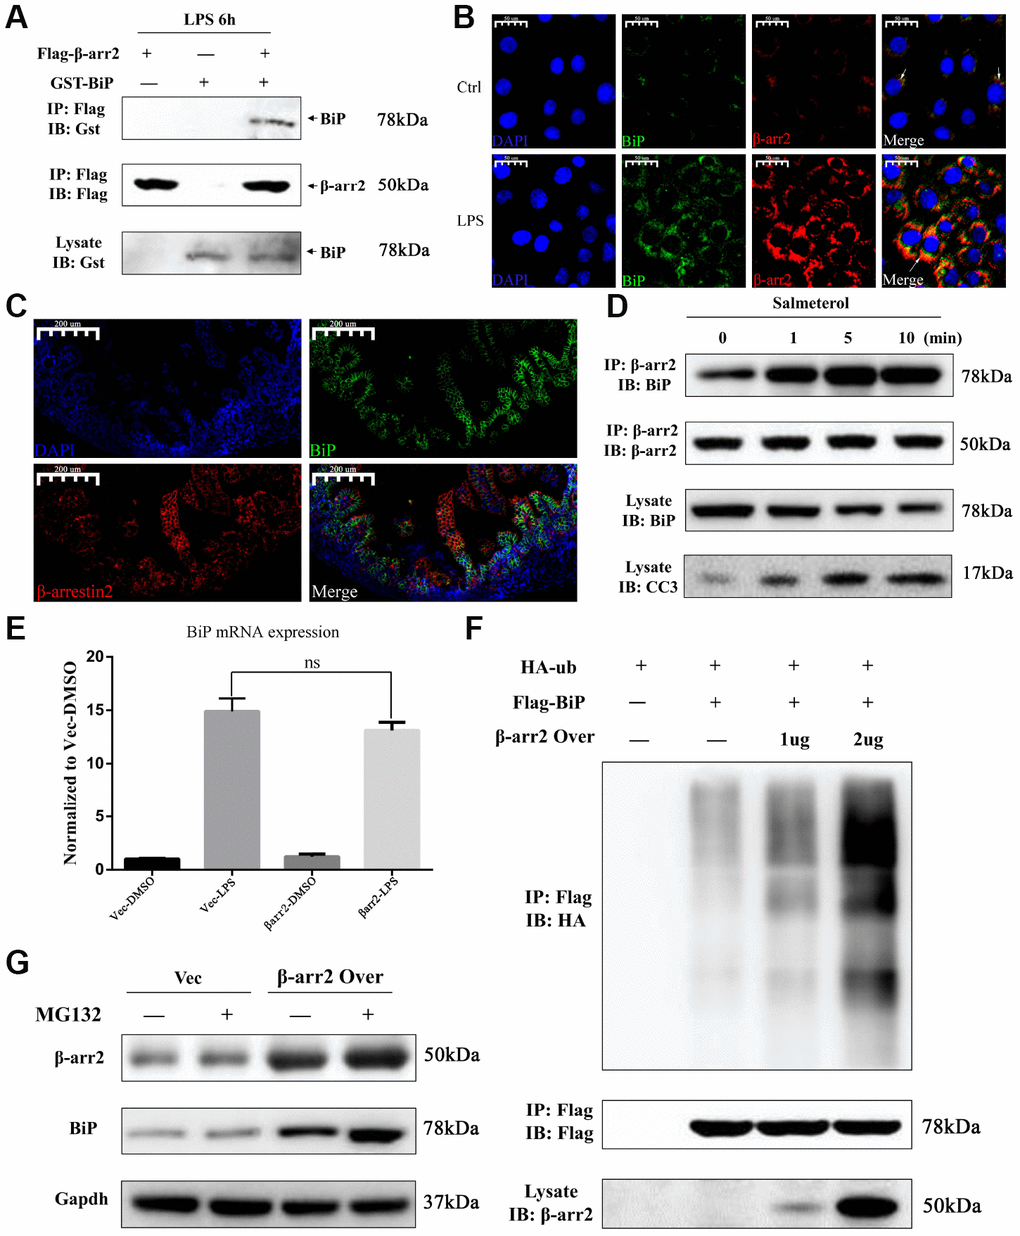 β-arrestin-2 binds to BiP and promotes its polyubiquitination and degradation. (A) A co-immunoprecipitation assay revealed that β-arrestin-2 bound directly to BiP in LPS-stimulated cells. (B) An immunofluorescence assay demonstrated the colocalization of β-arrestin-2 and BiP in IEC-6 cells. (C) An immunofluorescence assay identified cells that were double-positive for β-arrestin-2 and BiP in NEC mouse intestinal specimens. (D) Salmeterol time-dependently improved the binding between β-arrestin-2 and BiP, and also increased apoptotic marker expression. (E) BiP mRNA expression was not significantly influenced by β-arrestin-2 overexpression. (F) β-arrestin-2 increased the ubiquitination of BiP in a dose-dependent manner in LPS-stimulated cells. (G) The ubiquitin-proteasome inhibitor MG132 increased BiP protein levels when β-arrestin-2 was overexpressed.